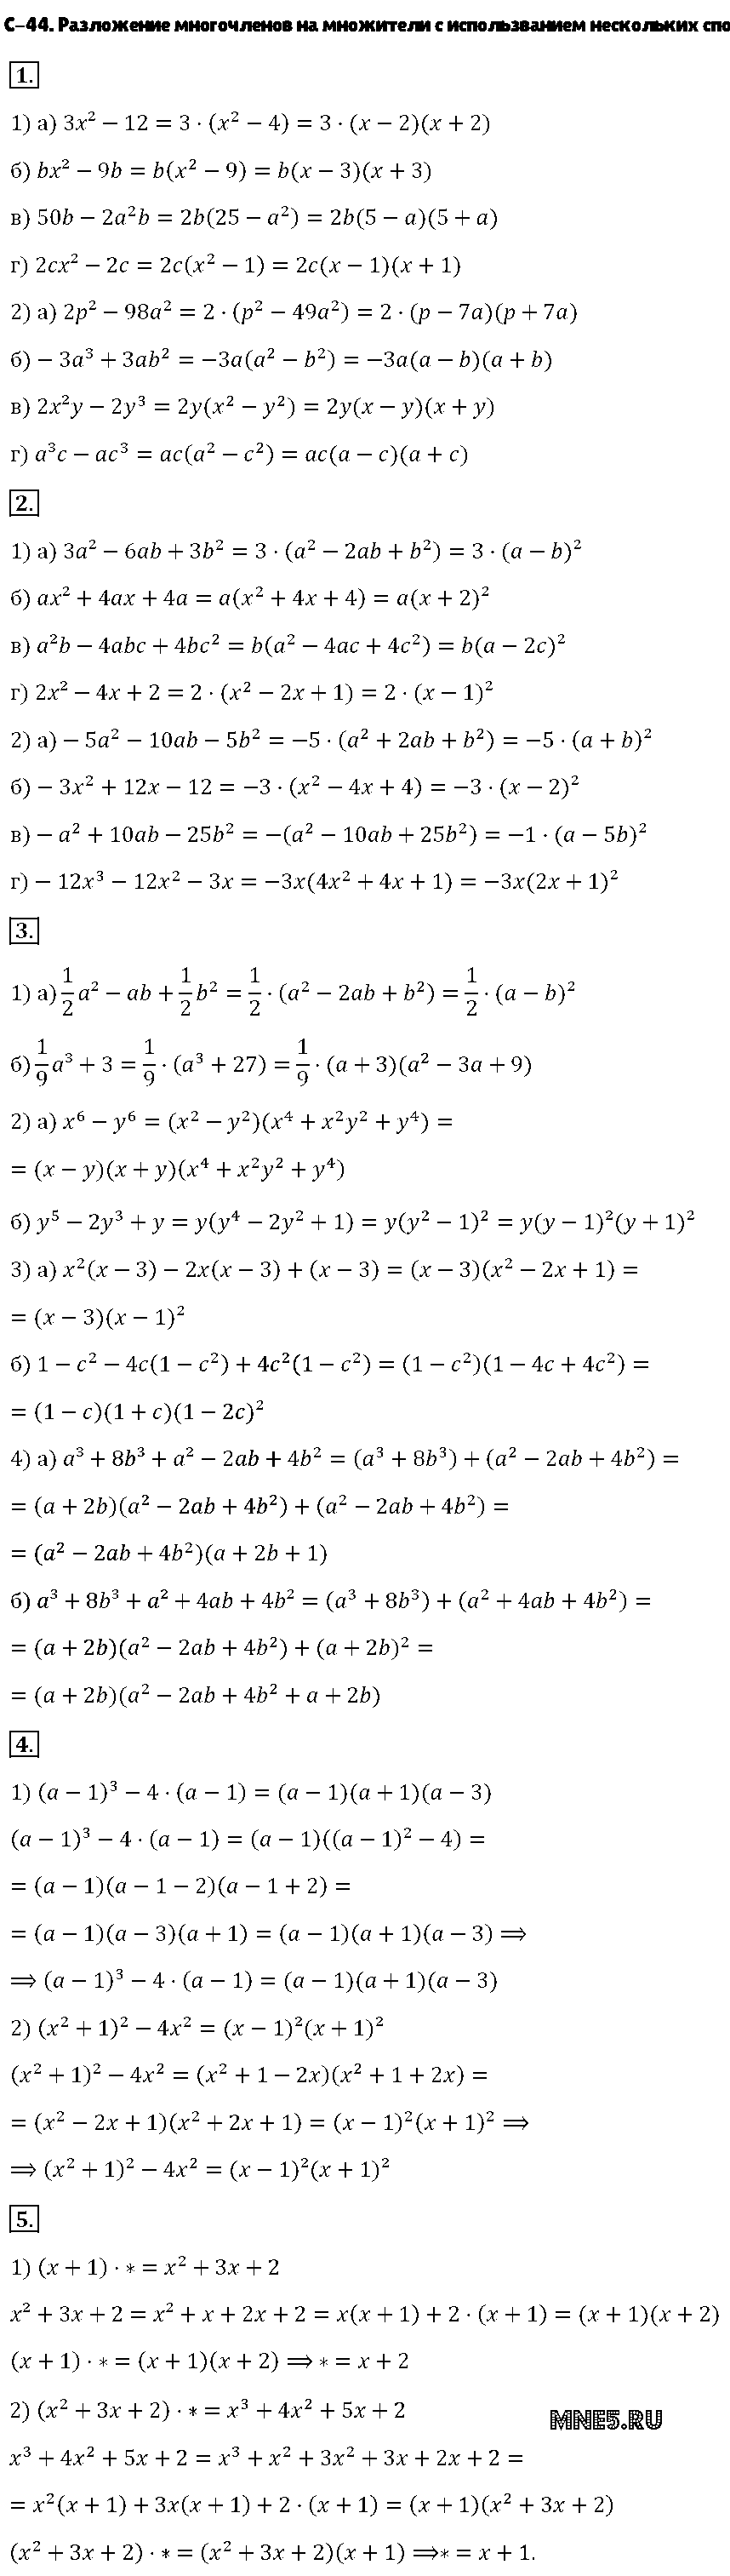 ГДЗ Алгебра 7 класс - С-44. Разложение многочленов на множители с использванием нескольких способов